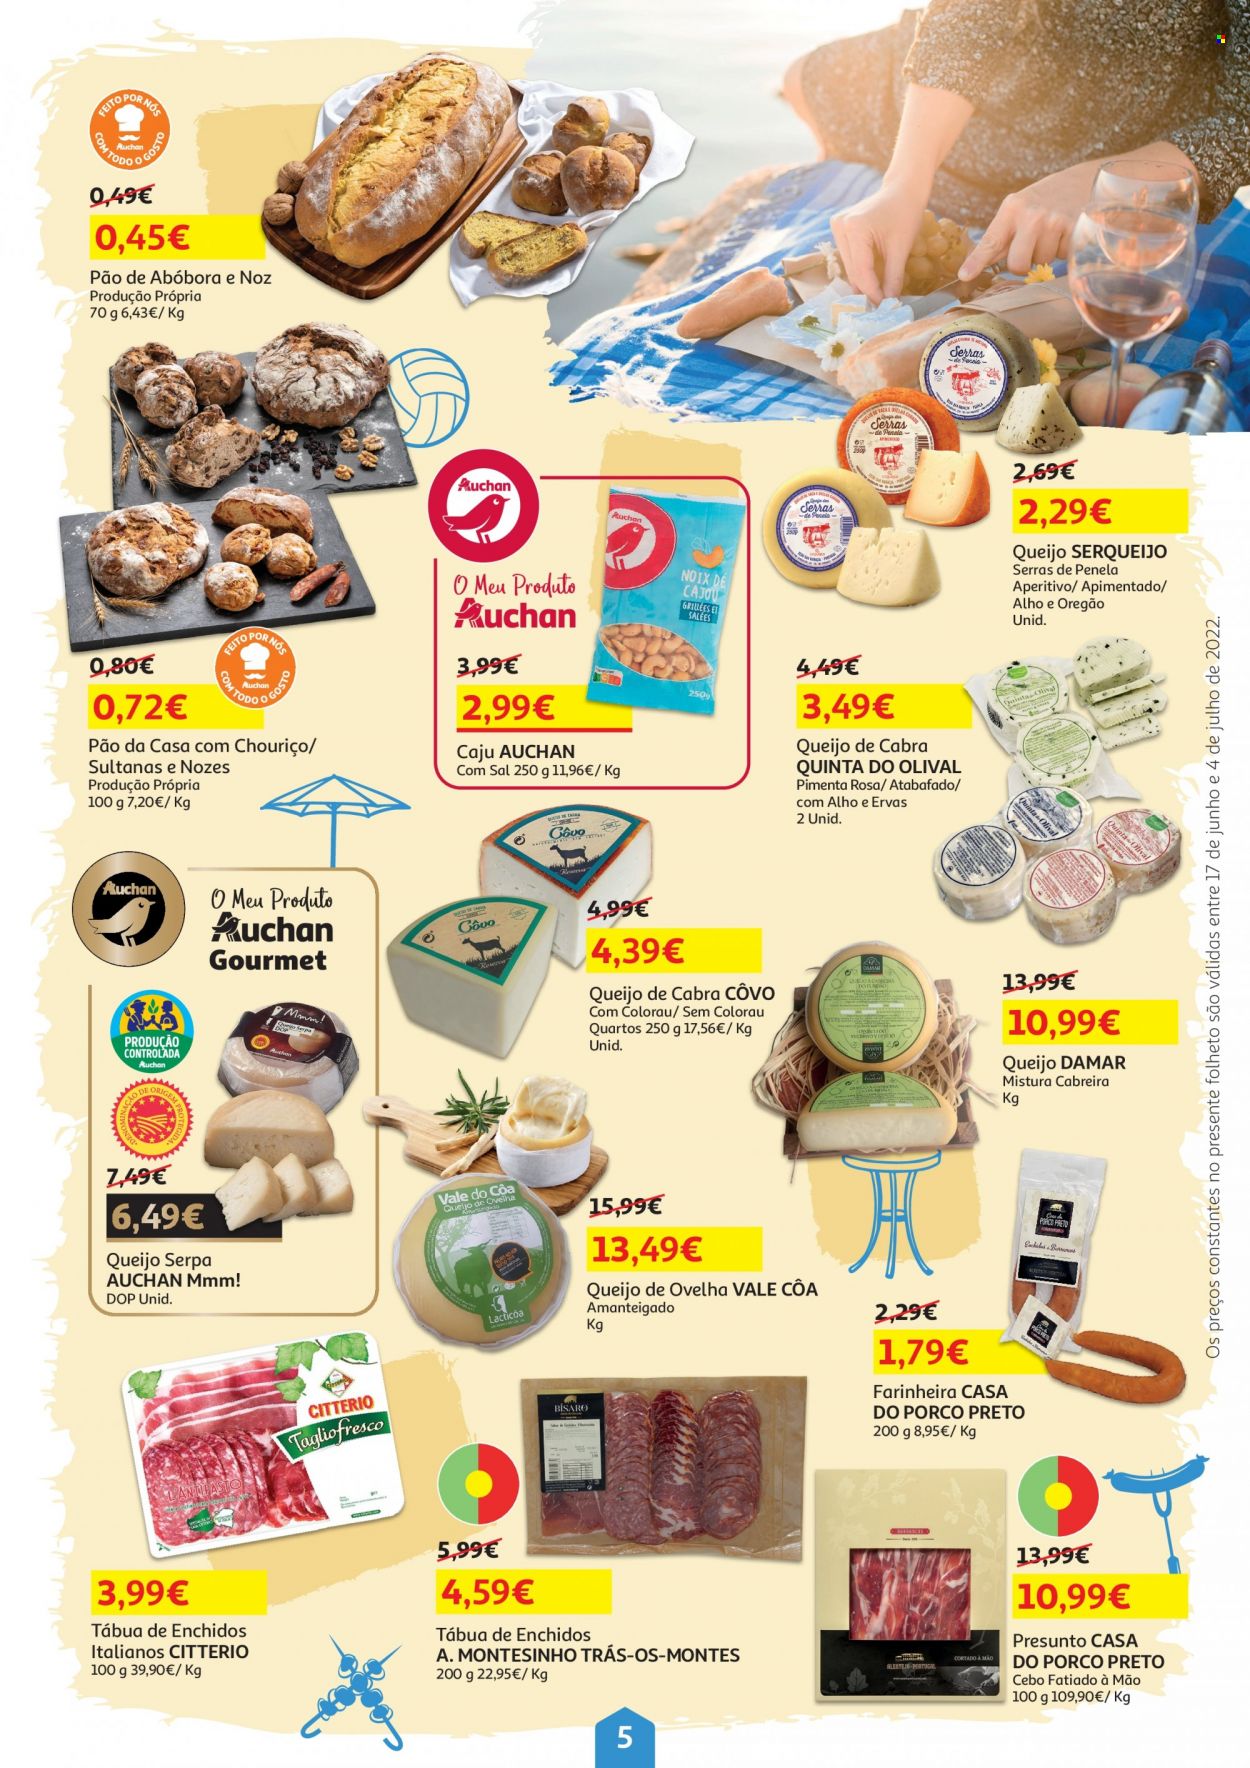 thumbnail - Folheto Auchan - 17.6.2022 - 4.7.2022 - Produtos em promoção - caju, pão, tábua de enchidos, queijo, queijo de ovelha, queijo de cabra, aperitivo, tábua. Página 5.